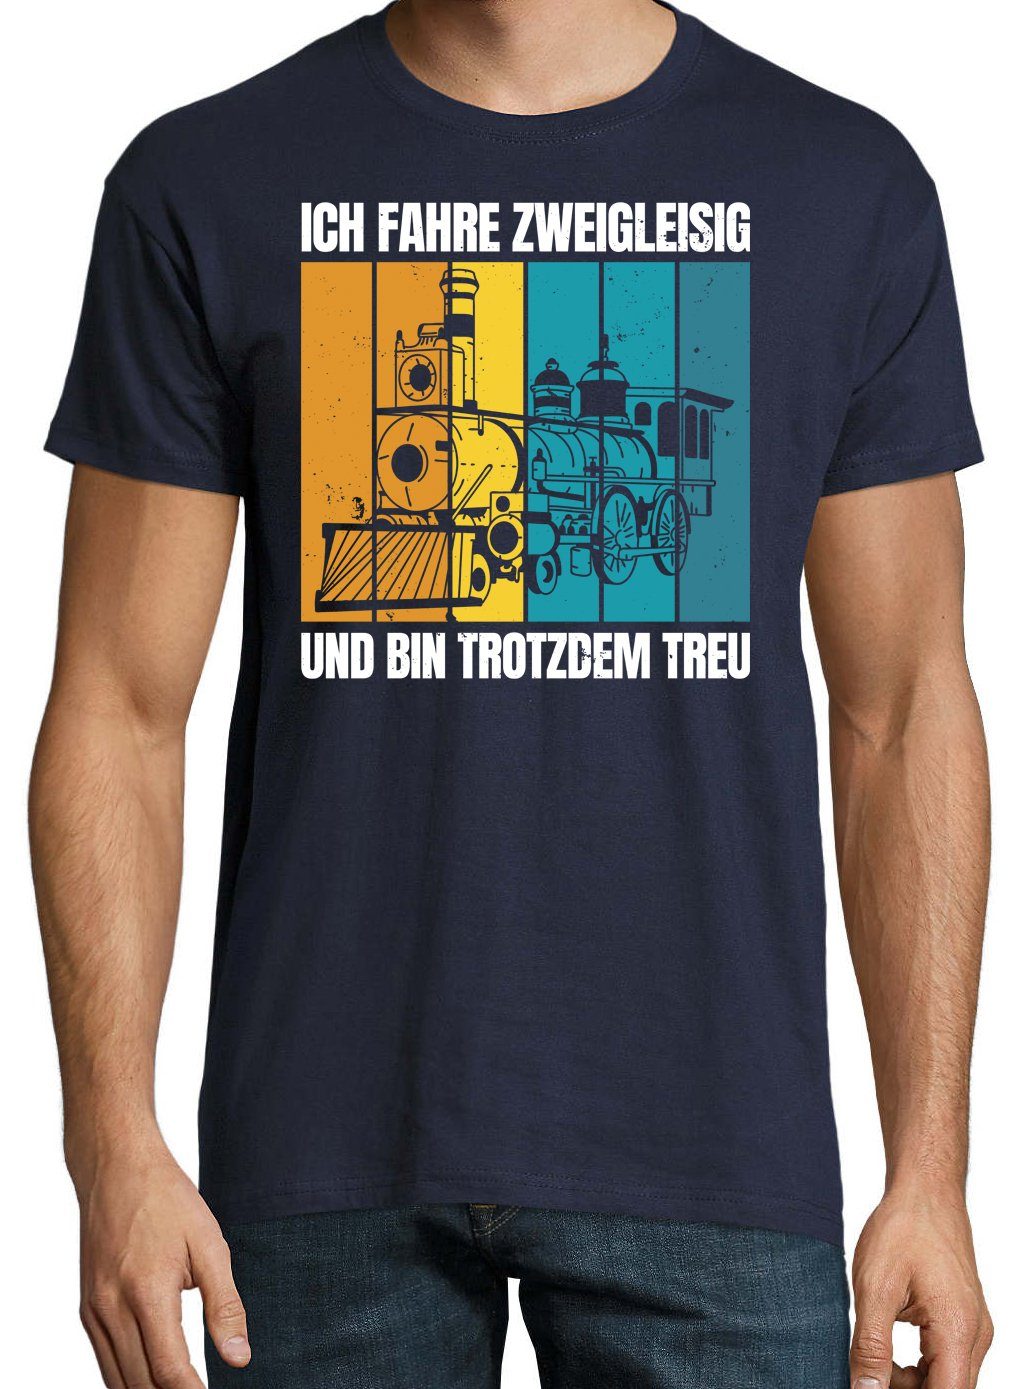 Shirt Frontprint Trotzdem Herren mit Treu Und Zweigleisig Navyblau lustigem T-Shirt Youth Designz